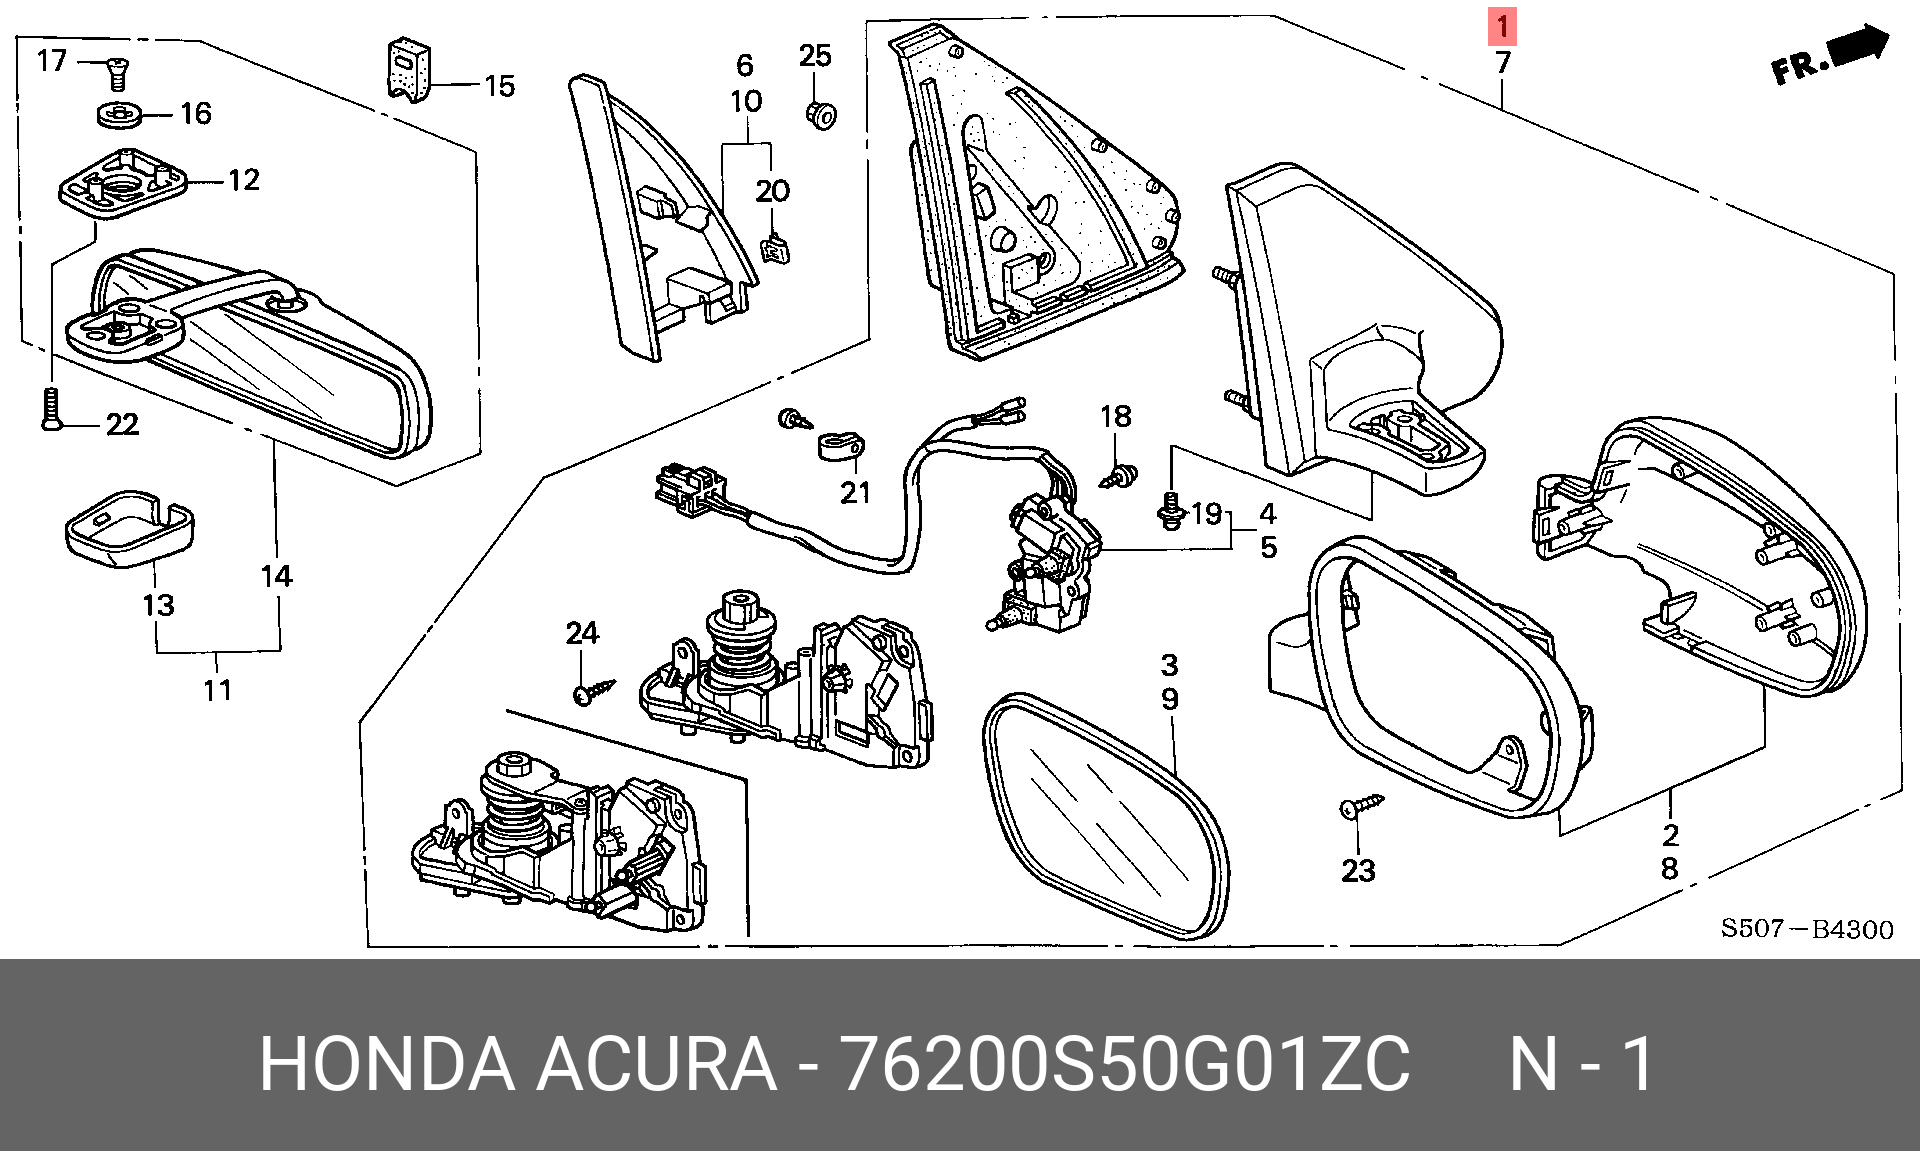 Хонда лого дверь. Чертёж левого бокового зеркала Хонда пилот 2014 года. Хонда лого 1999 дверная карта. Схема деталей Honda logo. Honda ;logo 1999 чертеж.